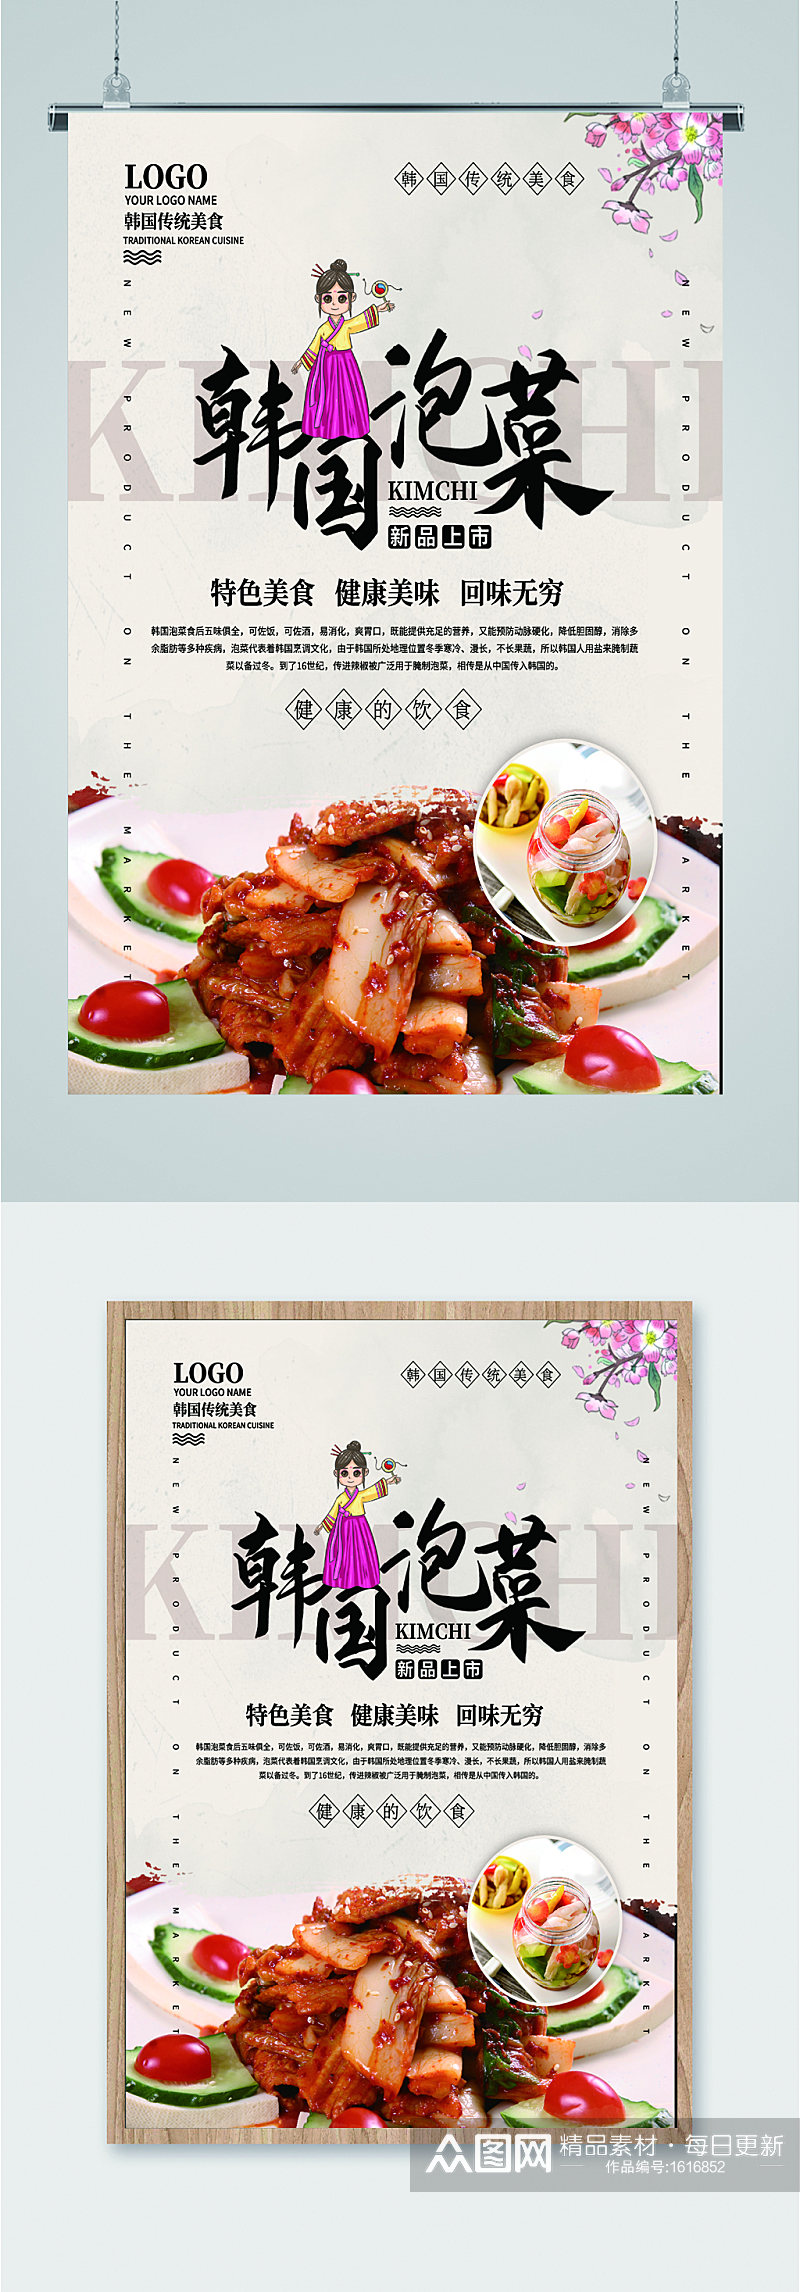 韩国泡菜特色美味宣传海报素材